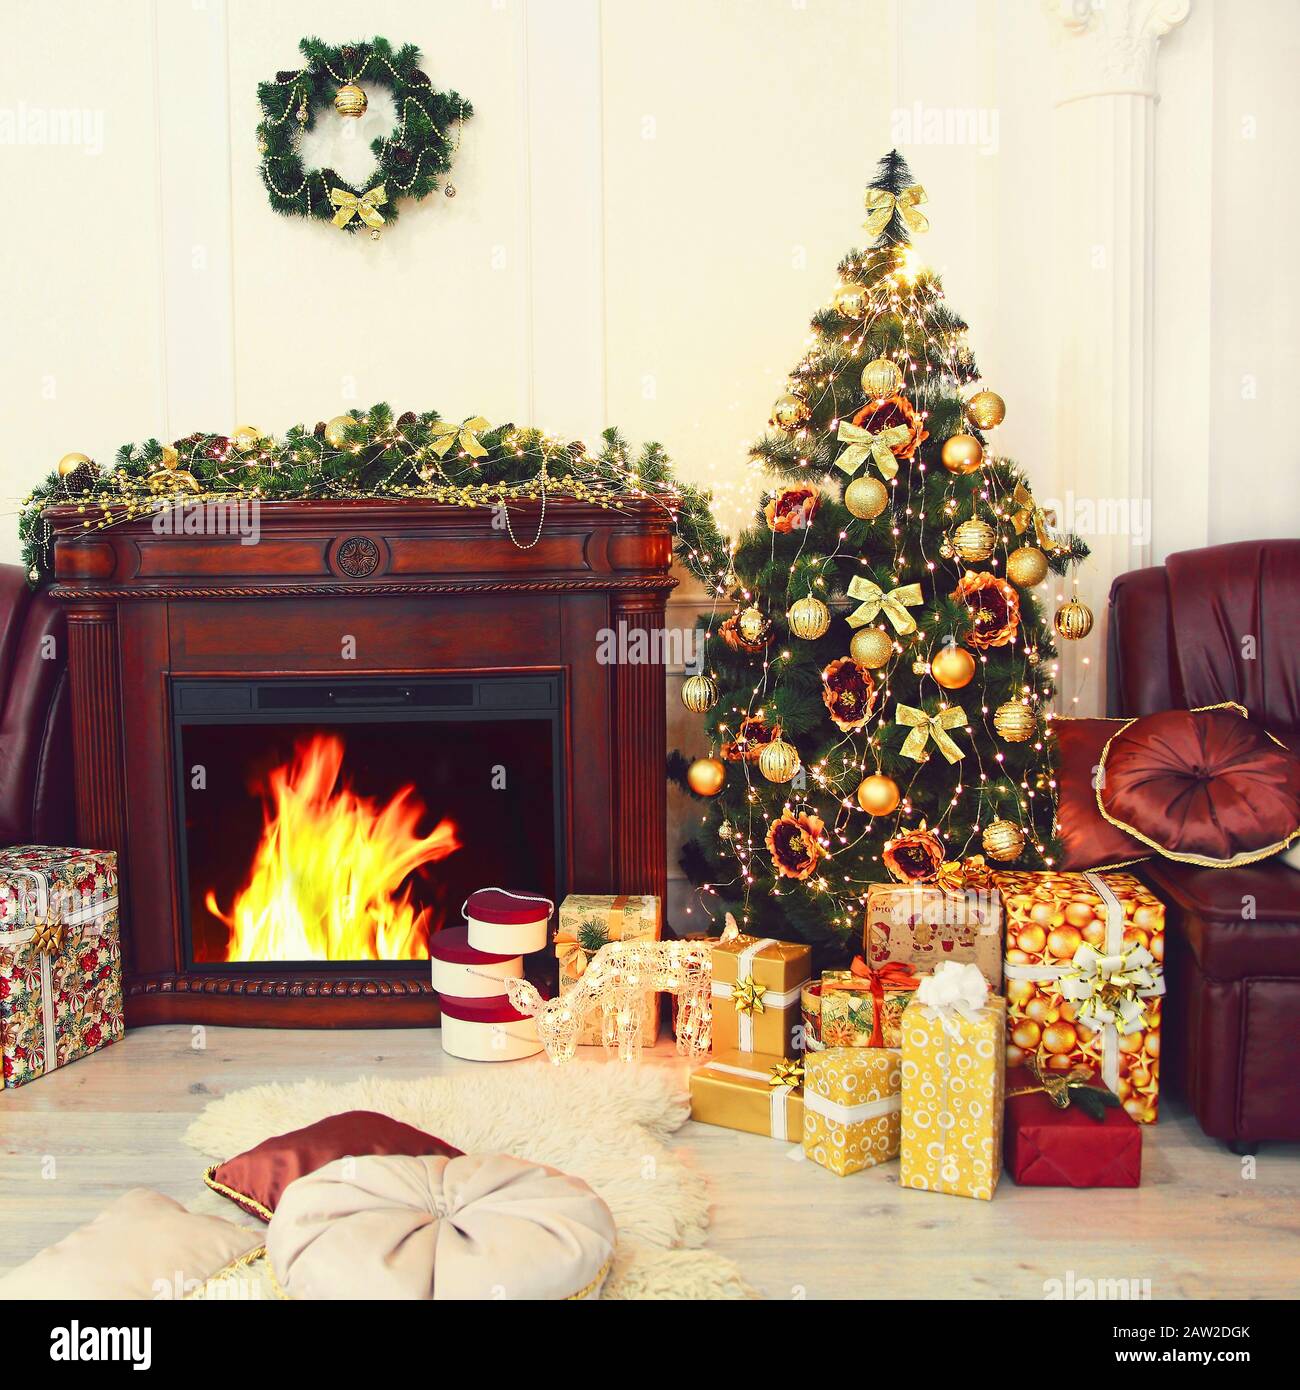 Sapin de Noël coloré, décorations de noël dorées et cadeaux près de la cheminée à l'intérieur. Nouvelle année. Noël. Banque D'Images